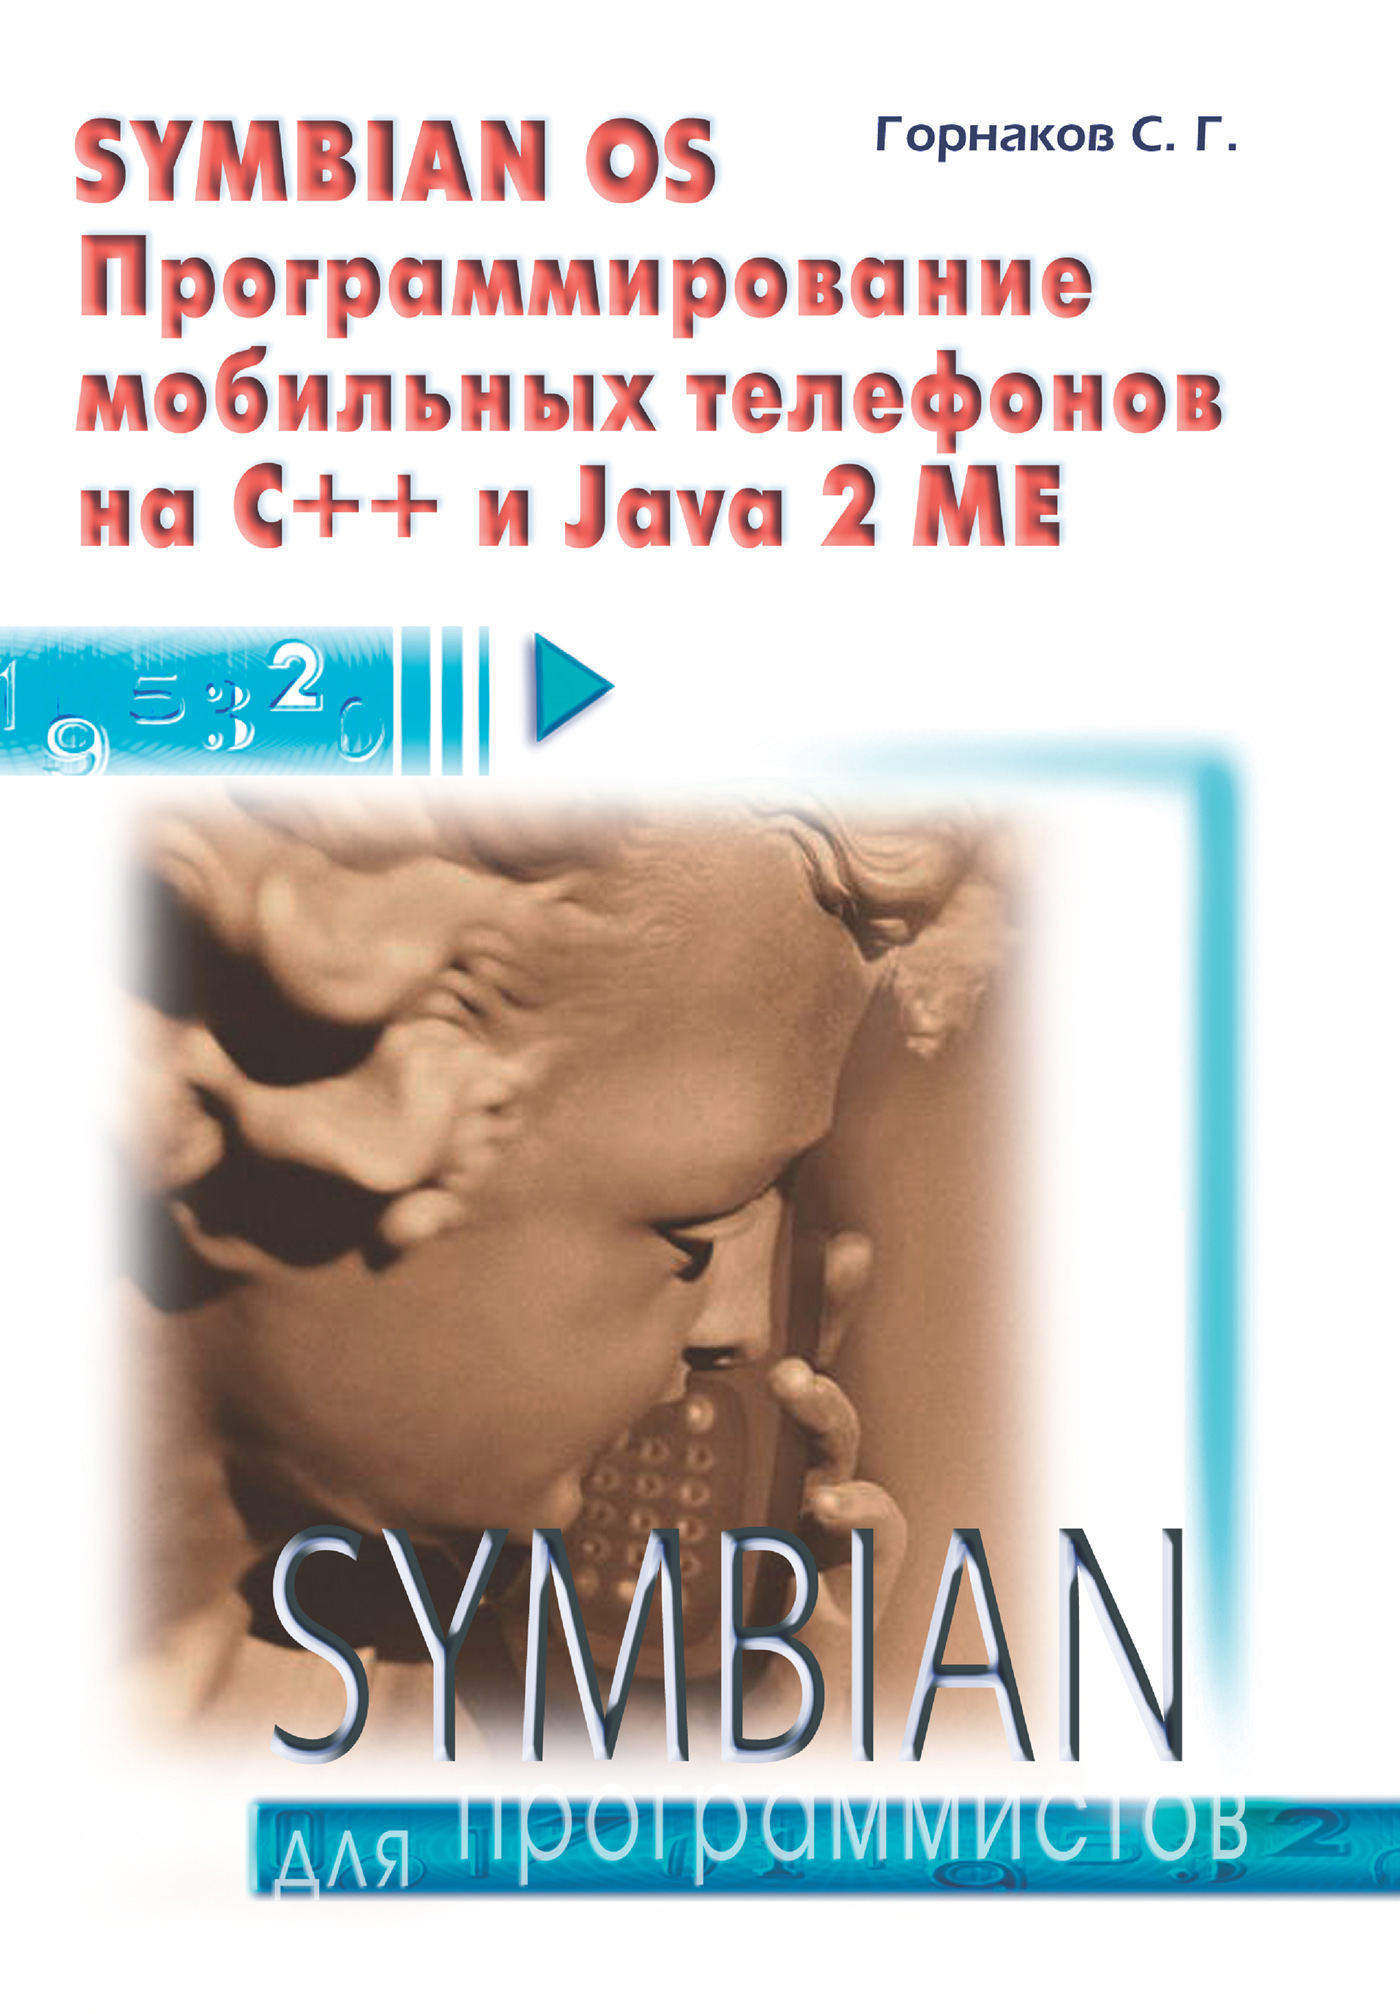 Symbian OS.Программирование мобильных телефонов на C++ и Java 2 ME